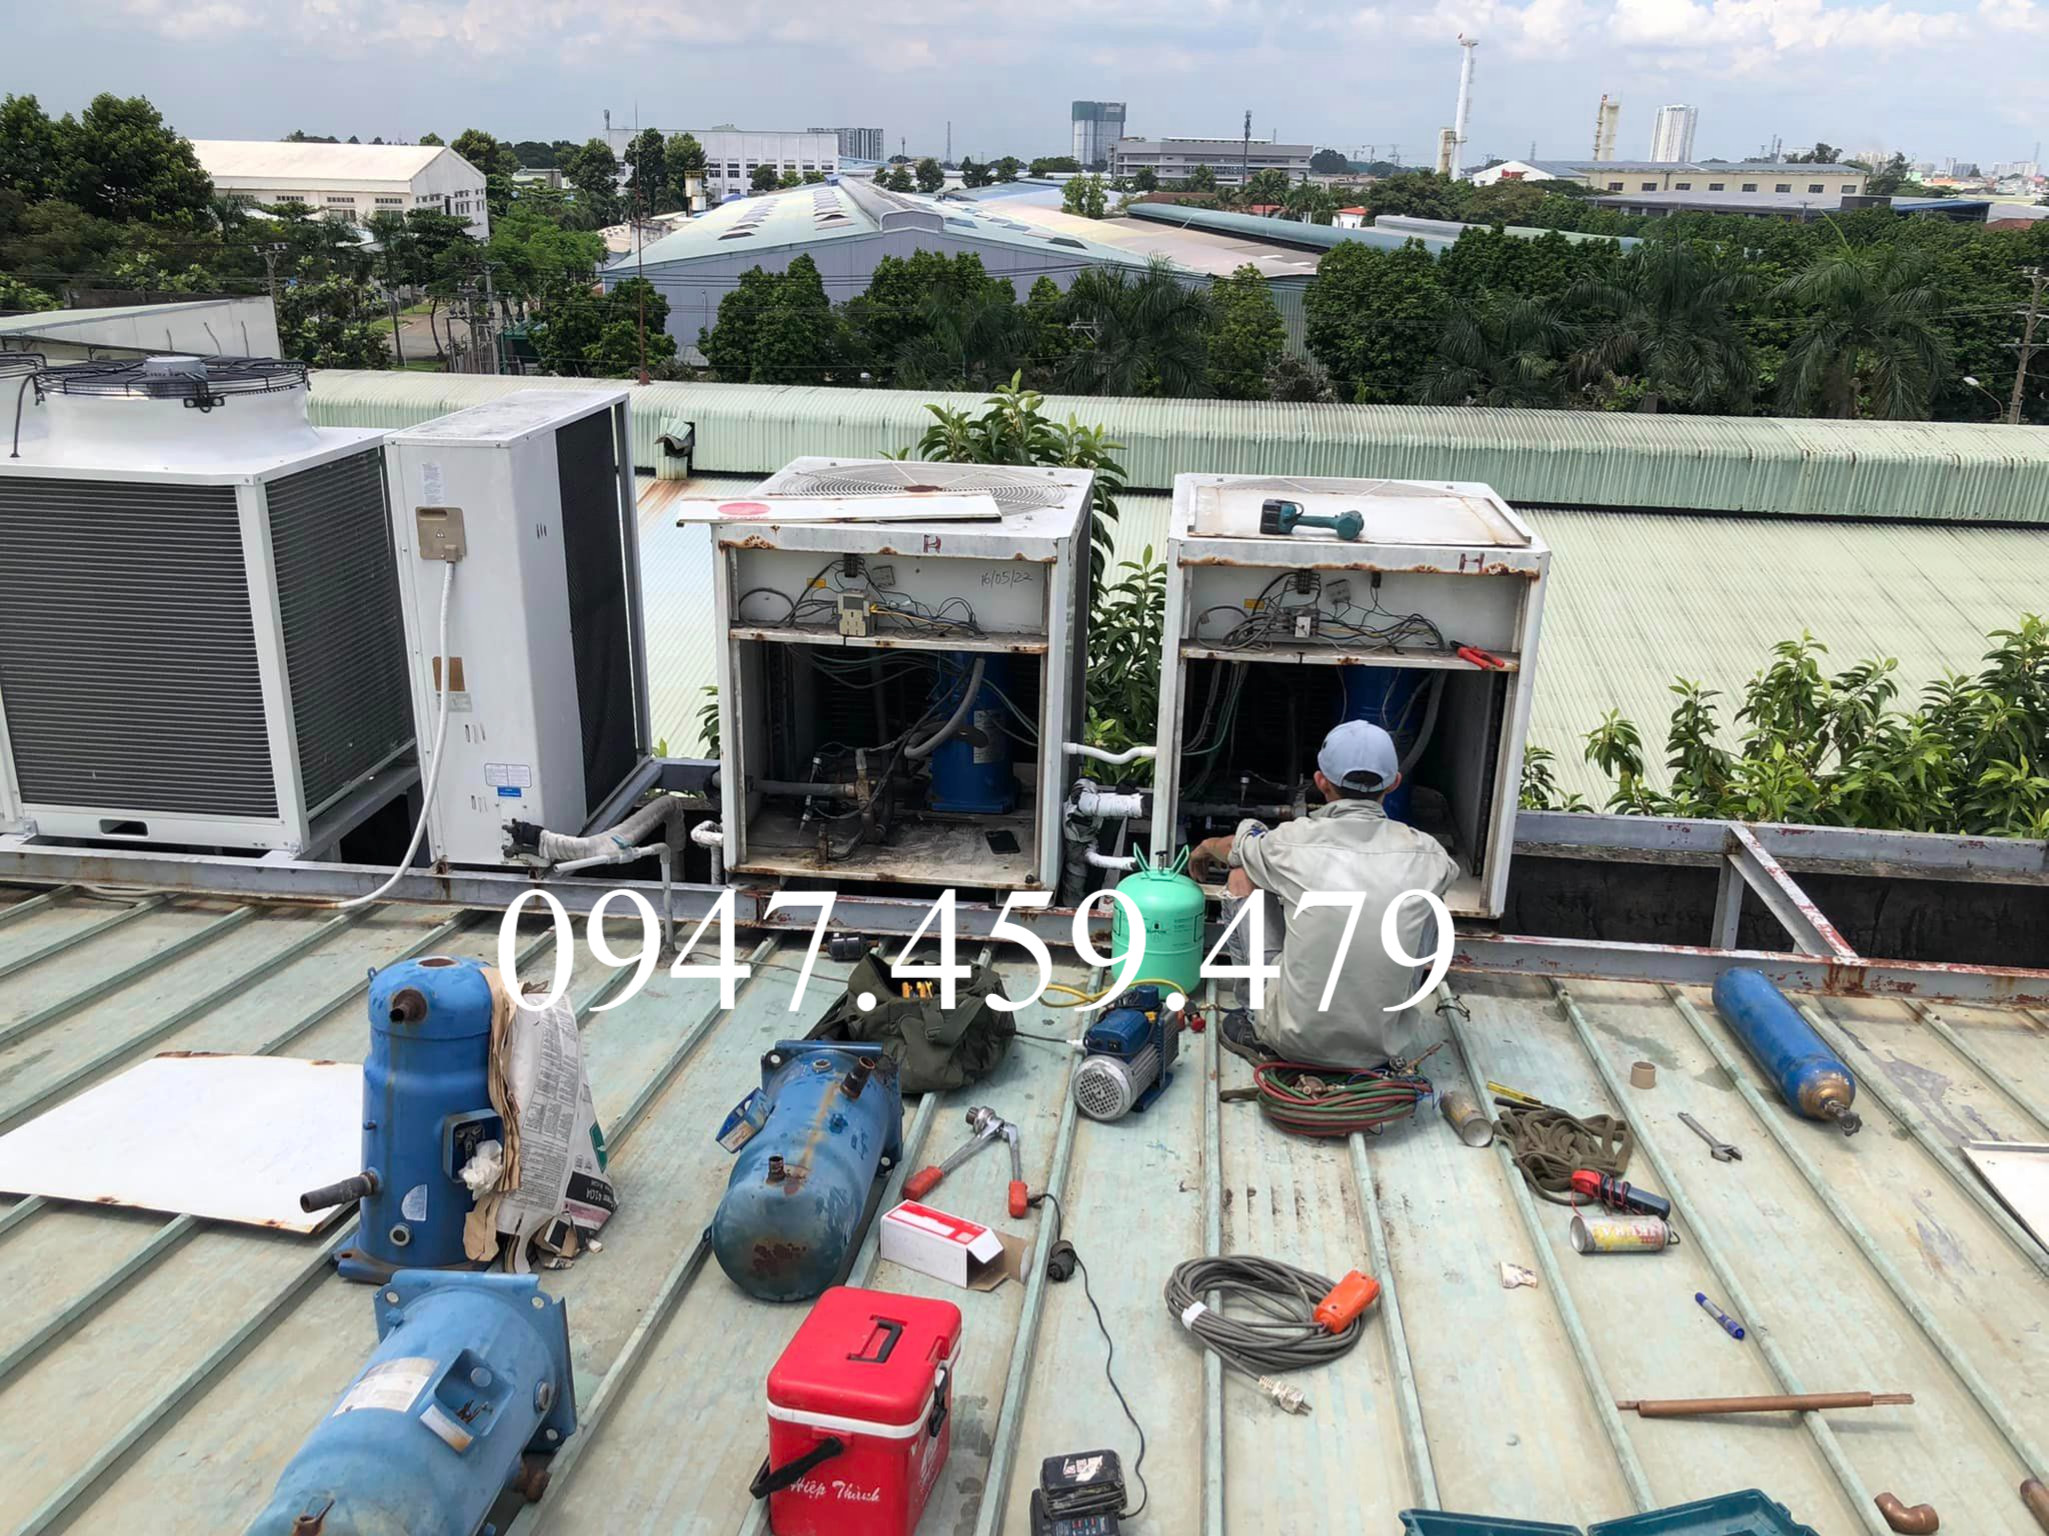 0947459479 sửa chữa máy lạnh VRV tận nơi tại quận 4 an khang